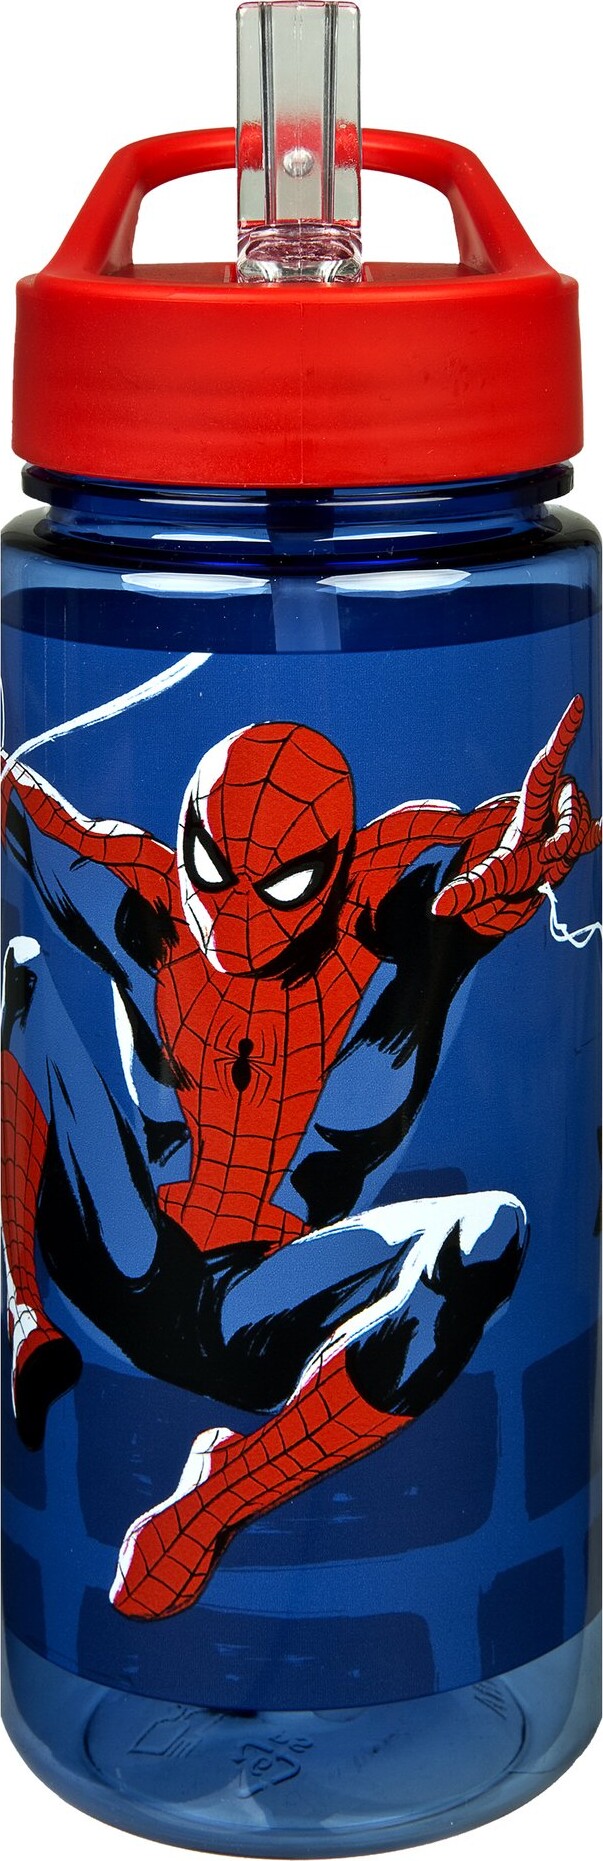 10: Undercover - Spider-man - Drikkedunk